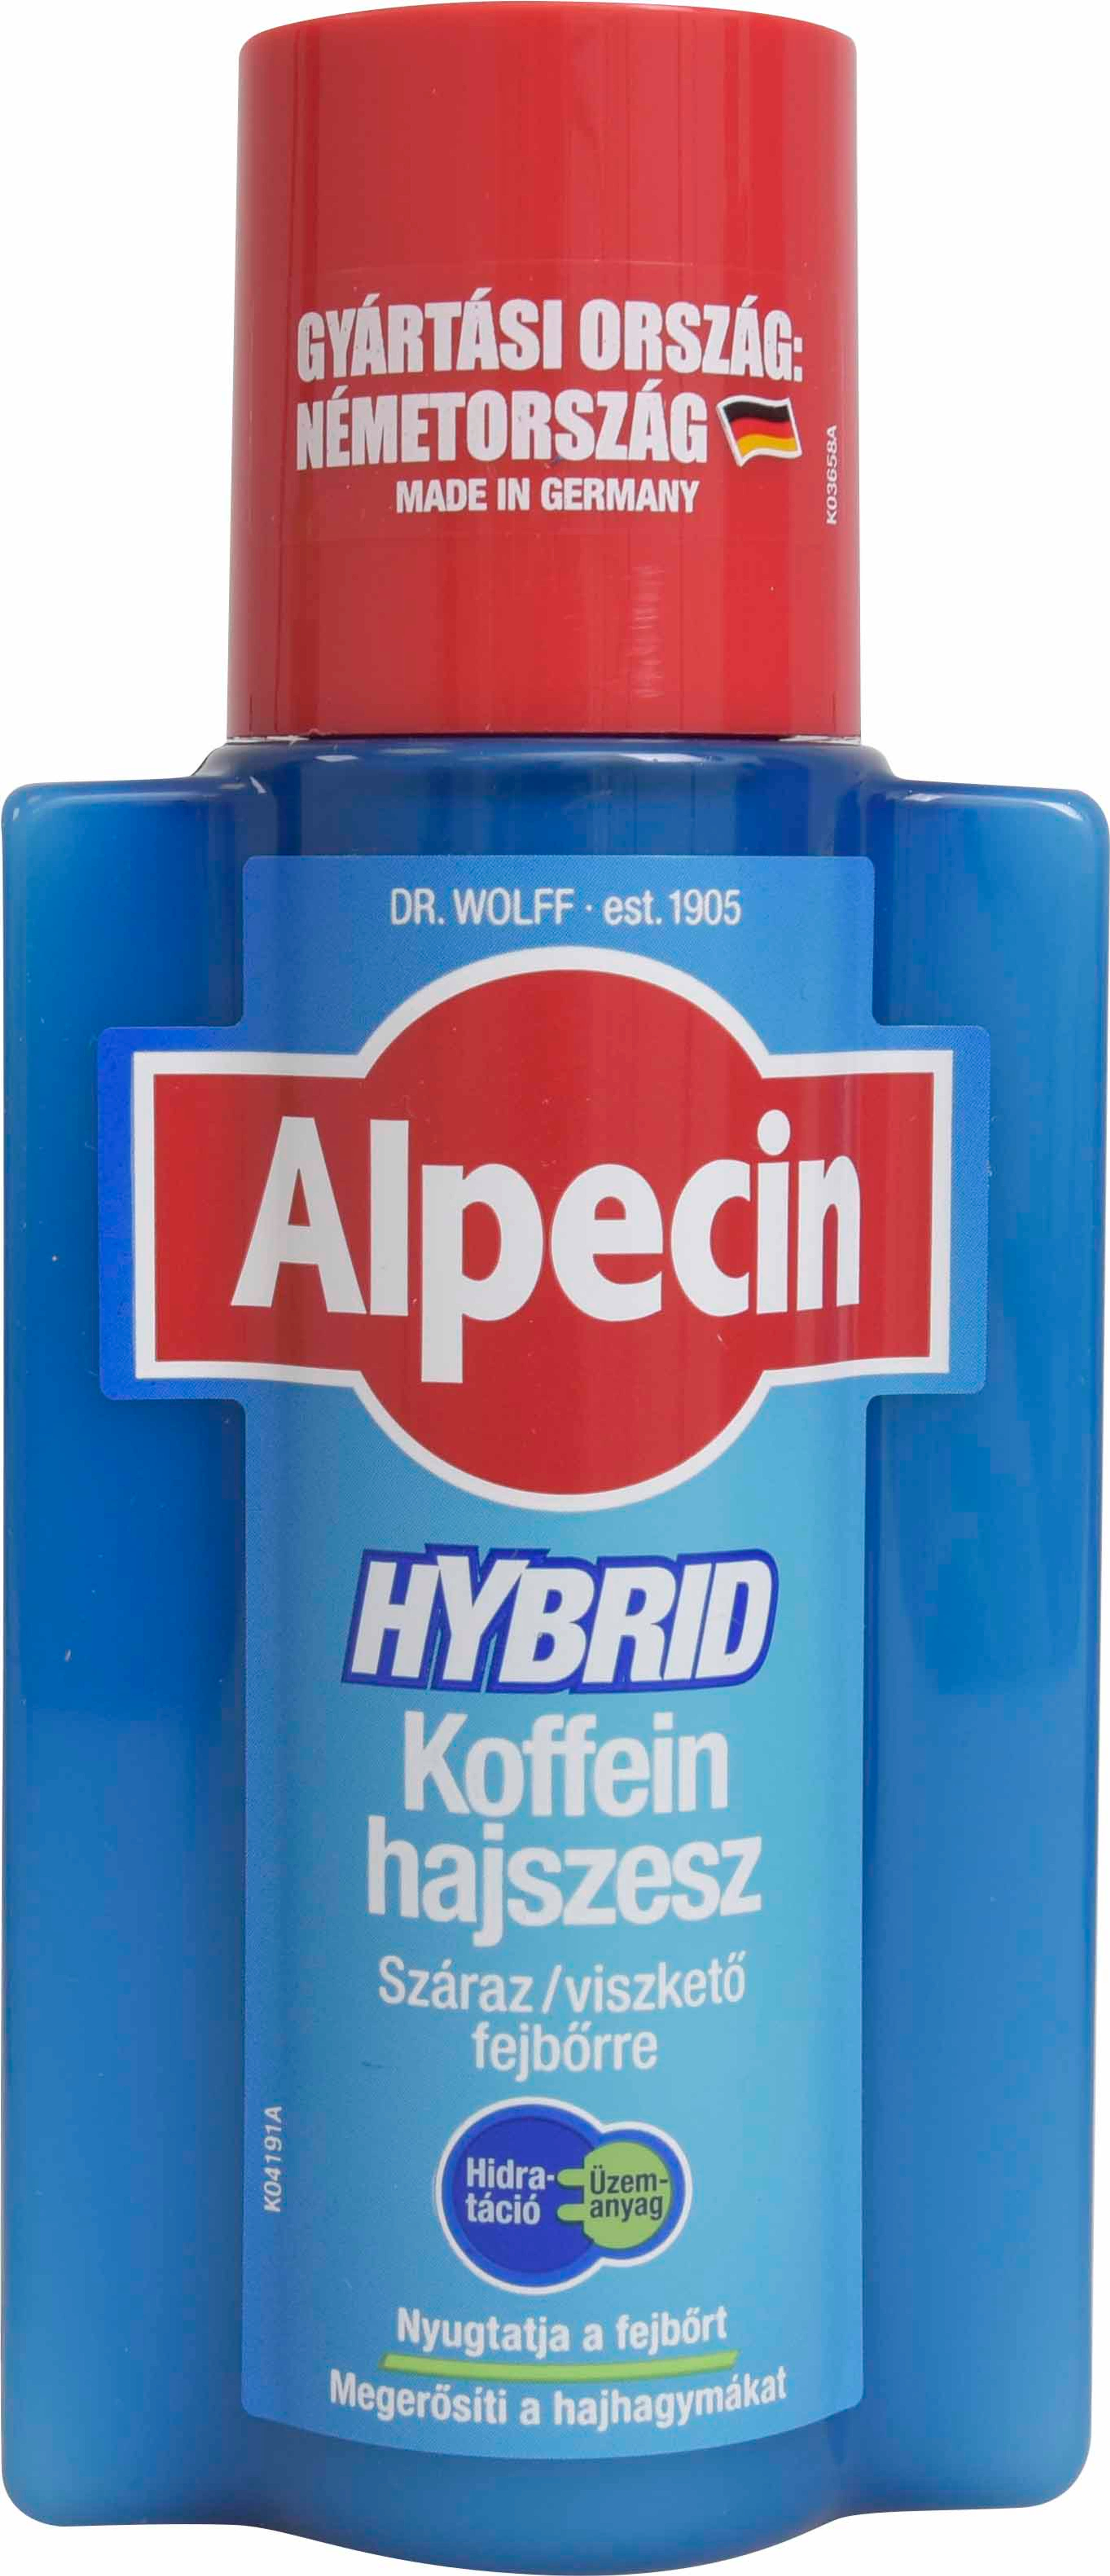 Alpecin hybrid koffein hajszesz - 200 ml